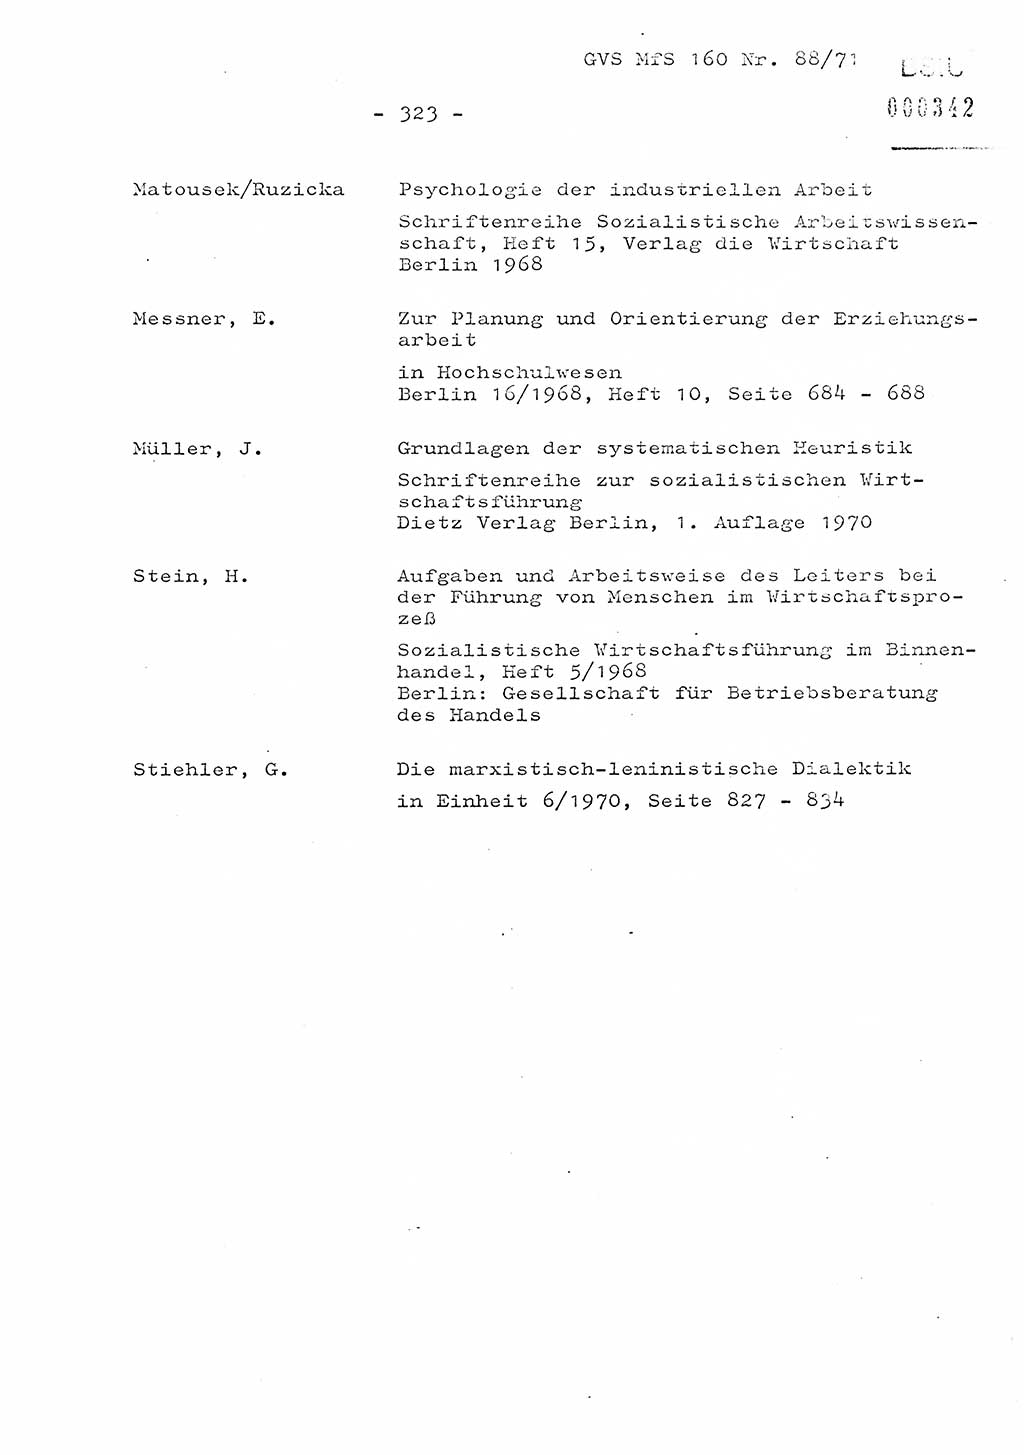 Dissertation Oberstleutnant Josef Schwarz (BV Schwerin), Major Fritz Amm (JHS), Hauptmann Peter Gräßler (JHS), Ministerium für Staatssicherheit (MfS) [Deutsche Demokratische Republik (DDR)], Juristische Hochschule (JHS), Geheime Verschlußsache (GVS) 160-88/71, Potsdam 1972, Seite 323 (Diss. MfS DDR JHS GVS 160-88/71 1972, S. 323)